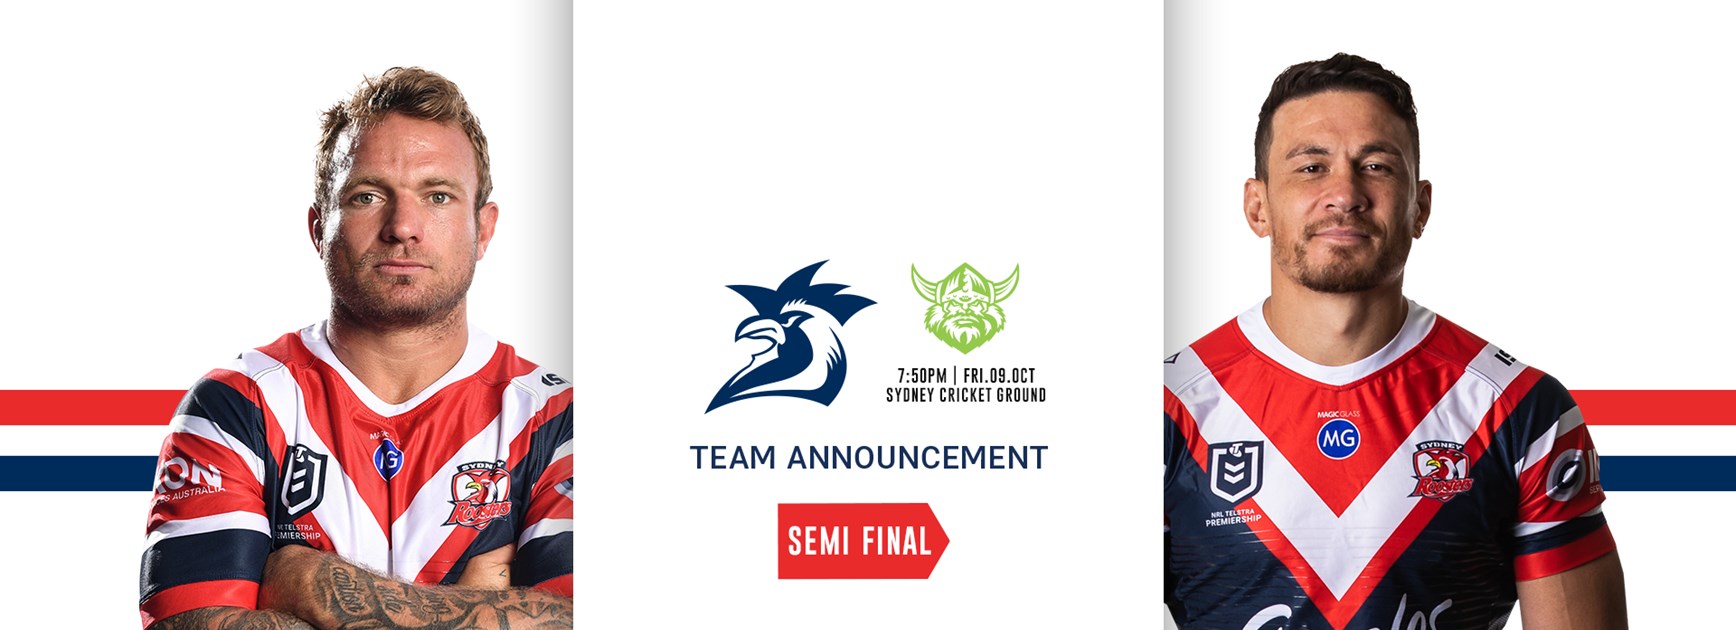 NRL Team Announcement | Semi Final